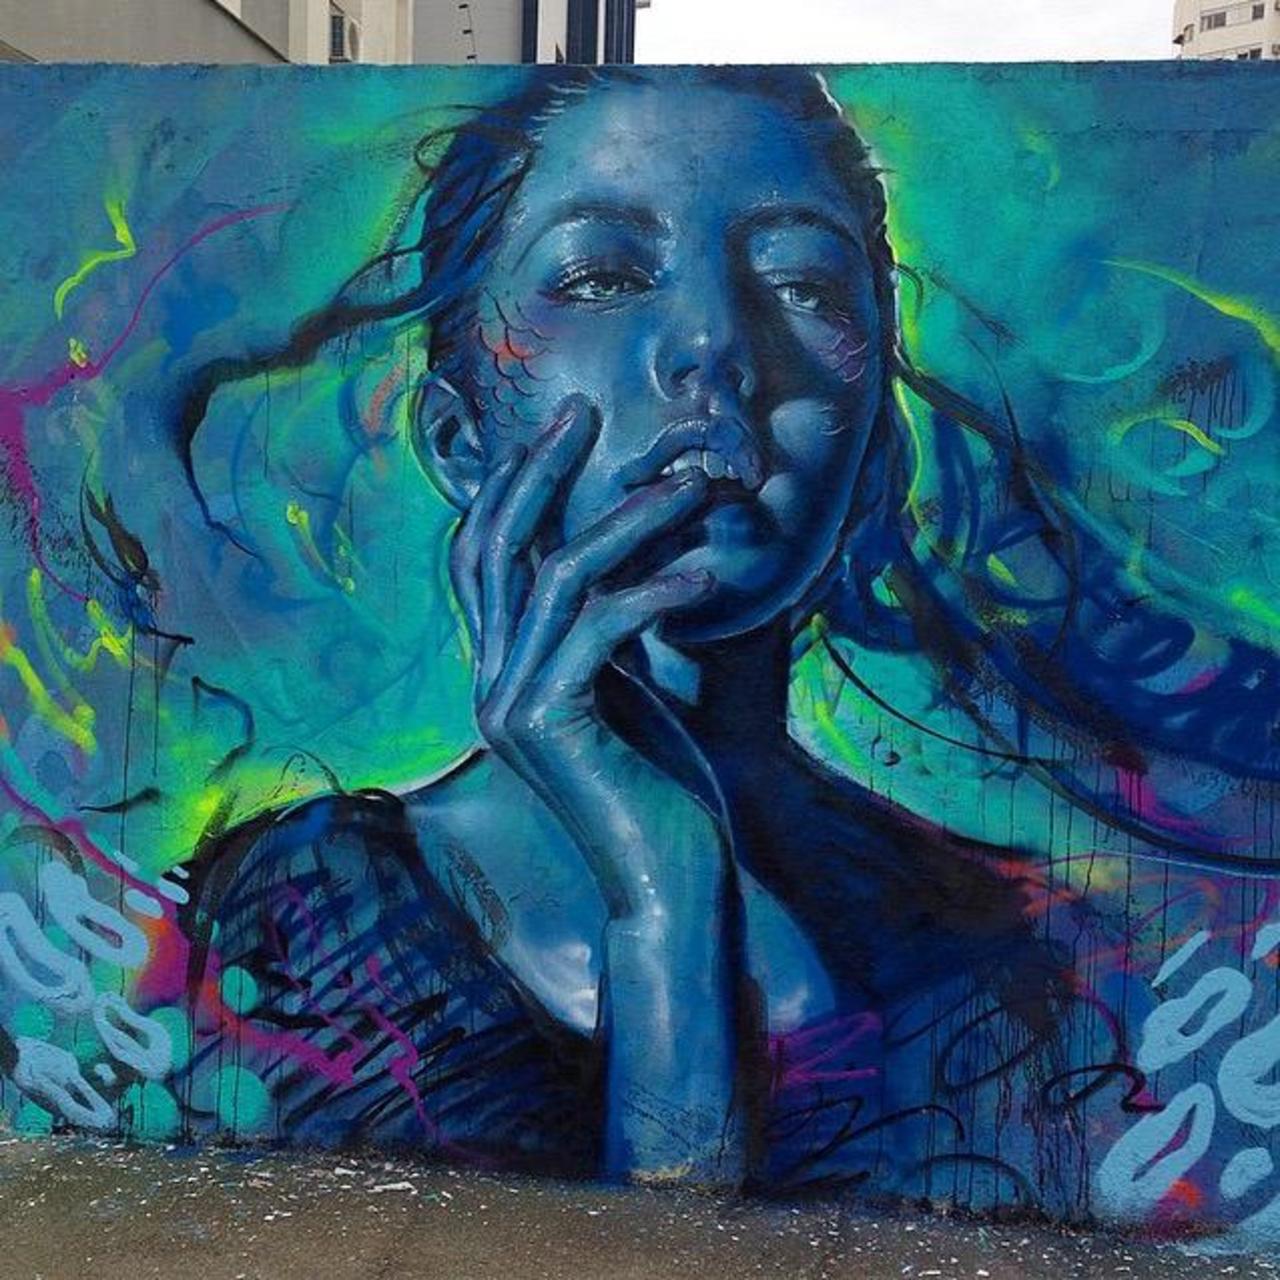 Thiago Valdi new Street Art piece titled 'Day Dreamer'

#art #mural #graffiti #streetart http://t.co/n0DAQgBNYl